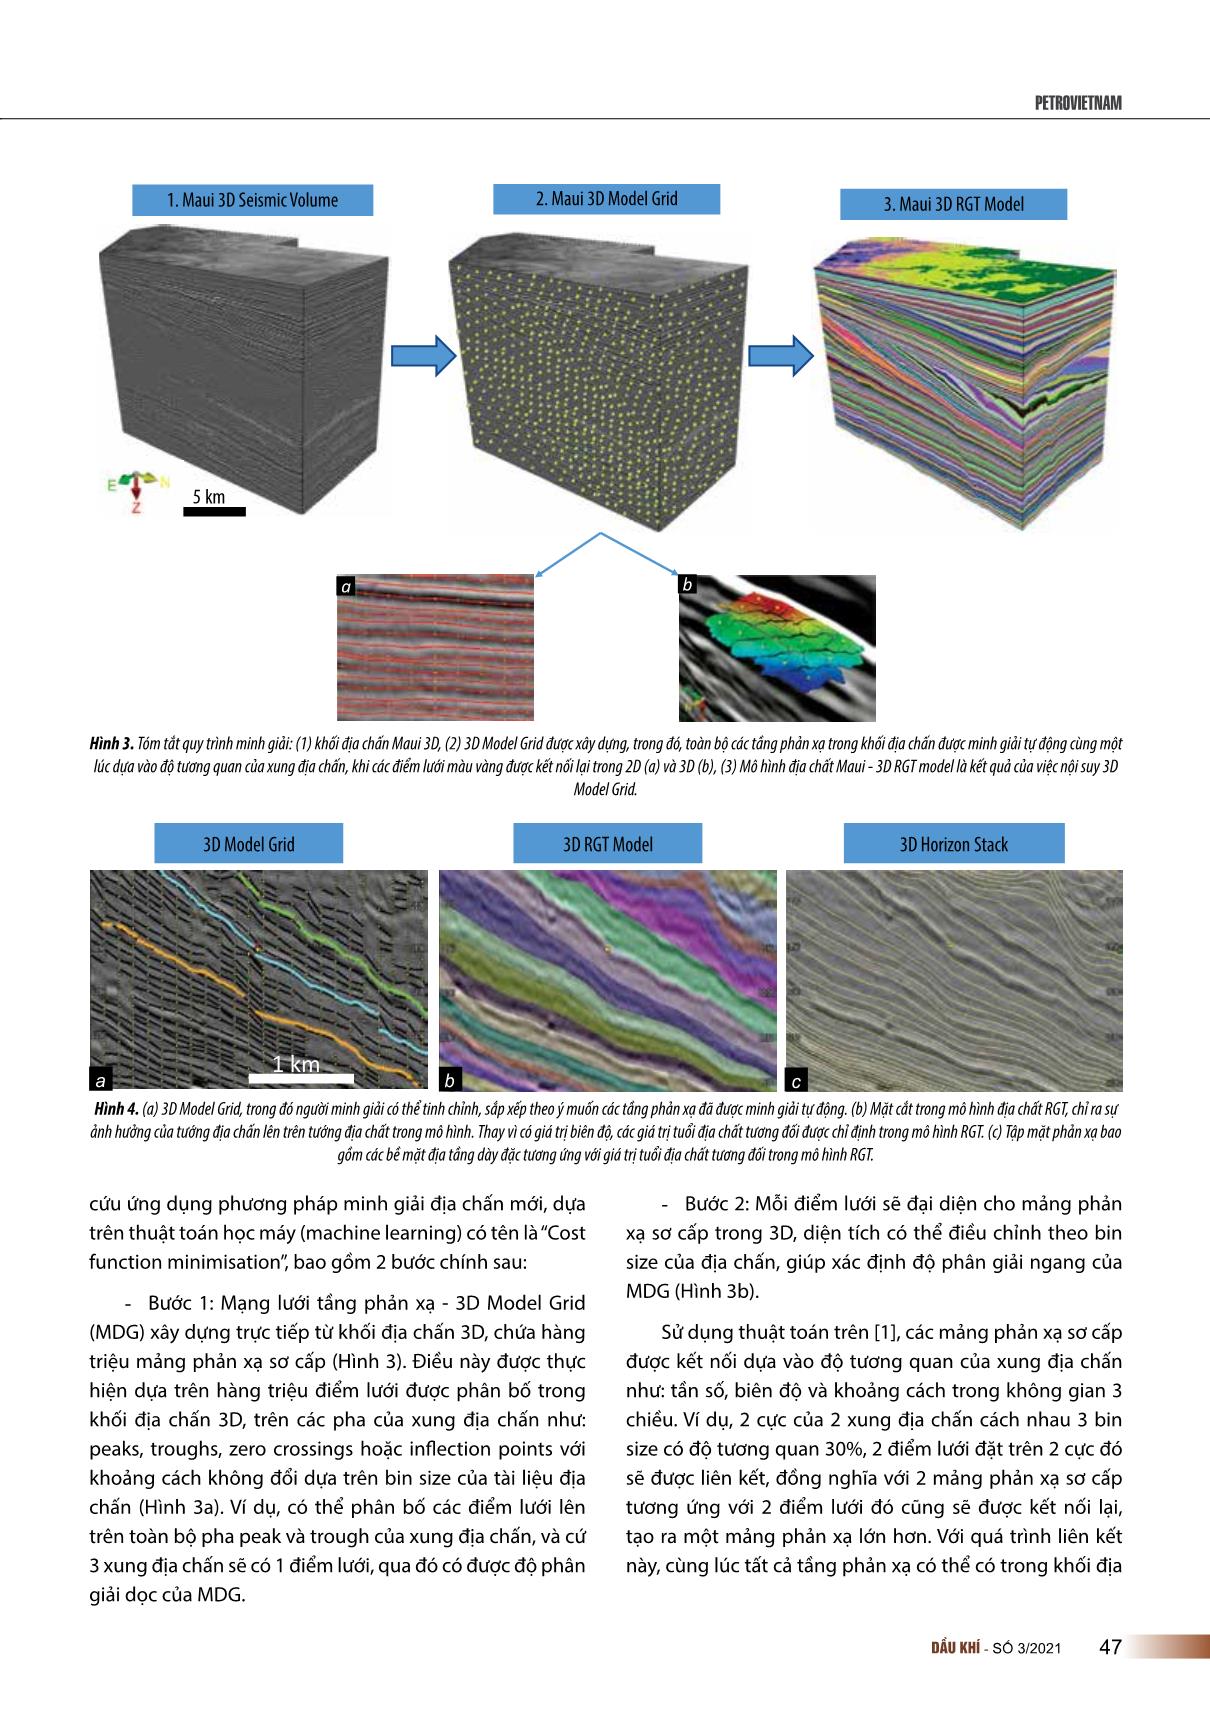 Đột phá trong minh giải tài liệu địa chấn 3D để phát hiện các bẫy chứa địa tầng trang 3